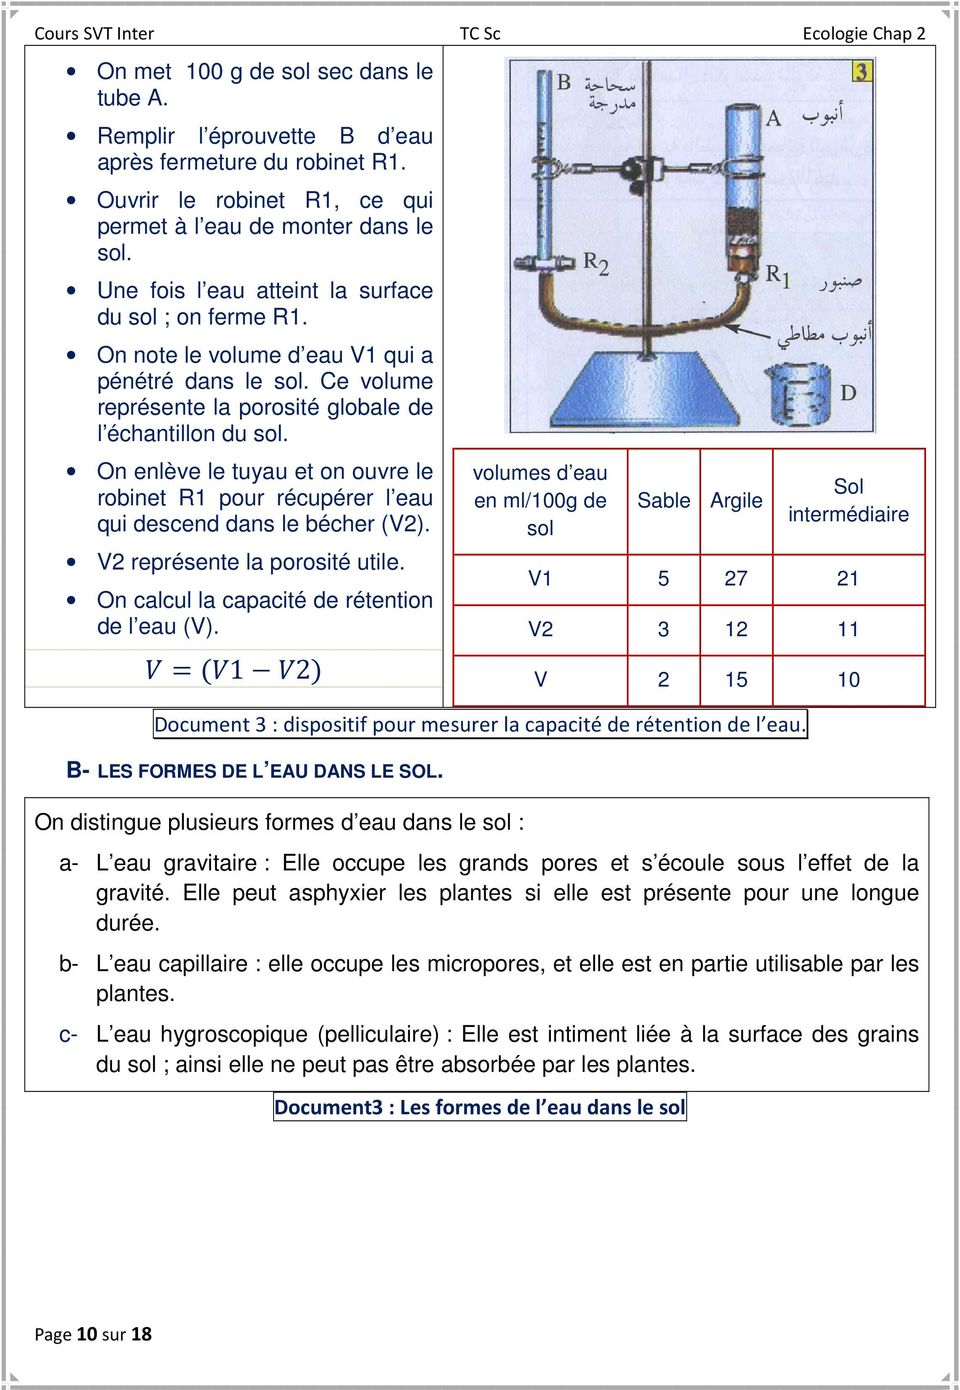 On enlève le tuyau et on ouvre le robinet R1 pour récupérer l eau qui descend dans le bécher (V2). V2 représente la porosité utile. On calcul la capacité de rétention de l eau (V).